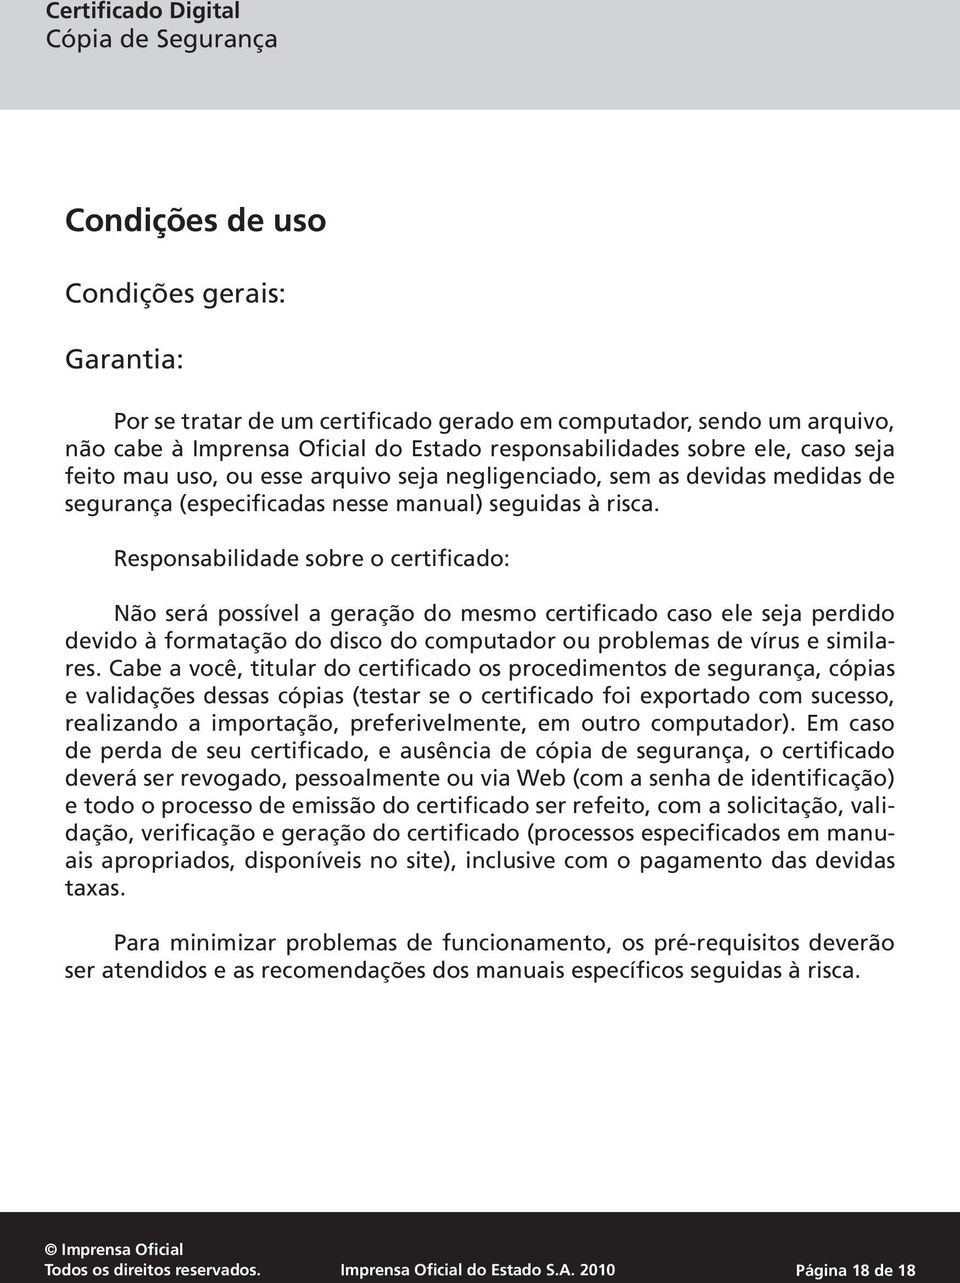 Responsabilidade sobre o certificado: Não será possível a geração do mesmo certificado caso ele seja perdido devido à formatação do disco do computador ou problemas de vírus e similares.